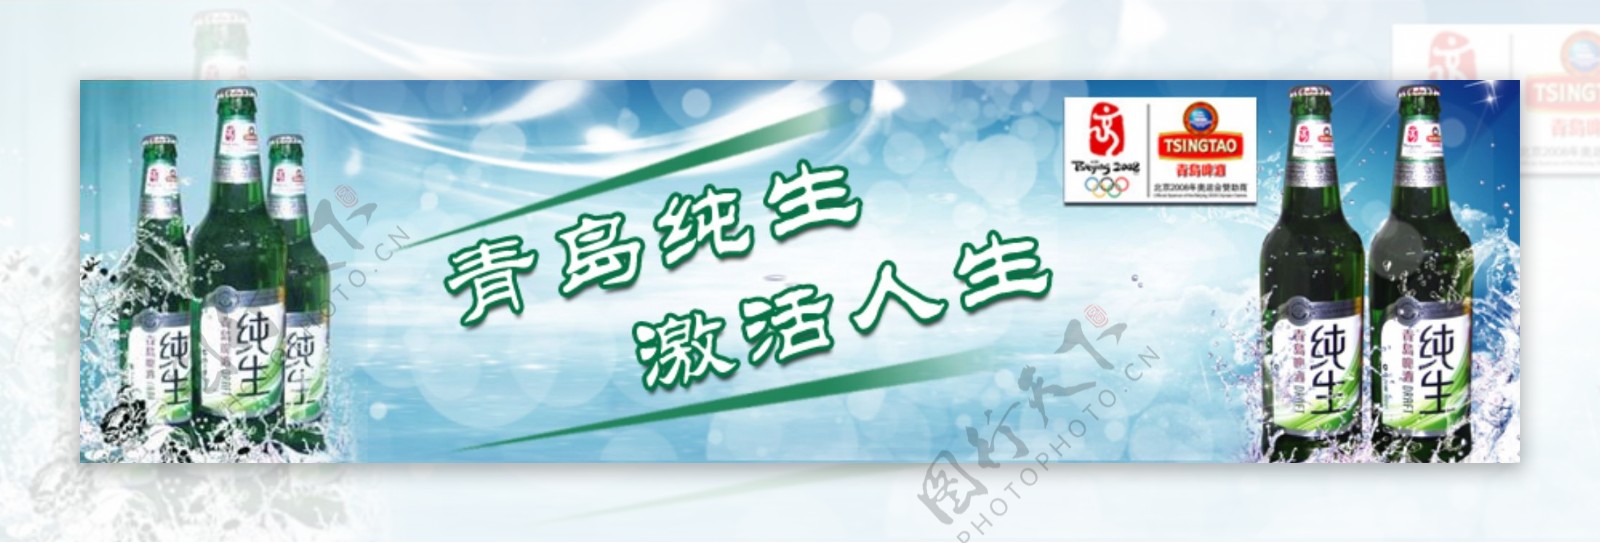 青岛纯生网页广告图片